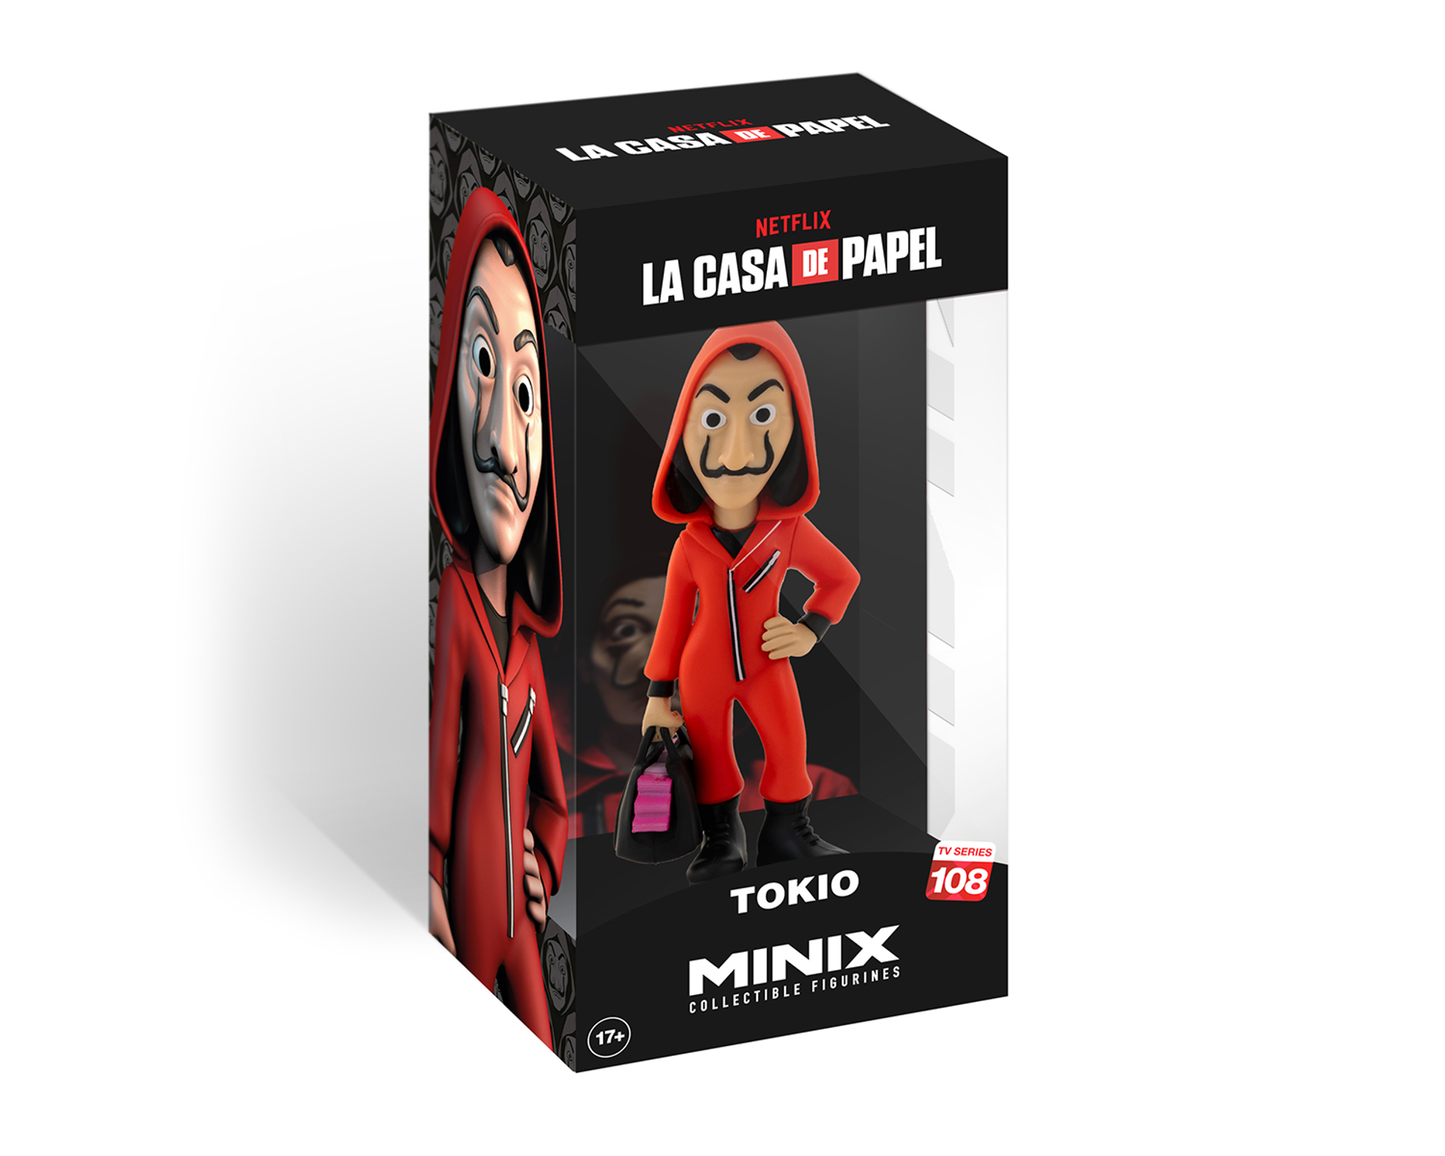 Minix - Netflix - La Casa de Papel - Tokyo with mask - Figure 12cm